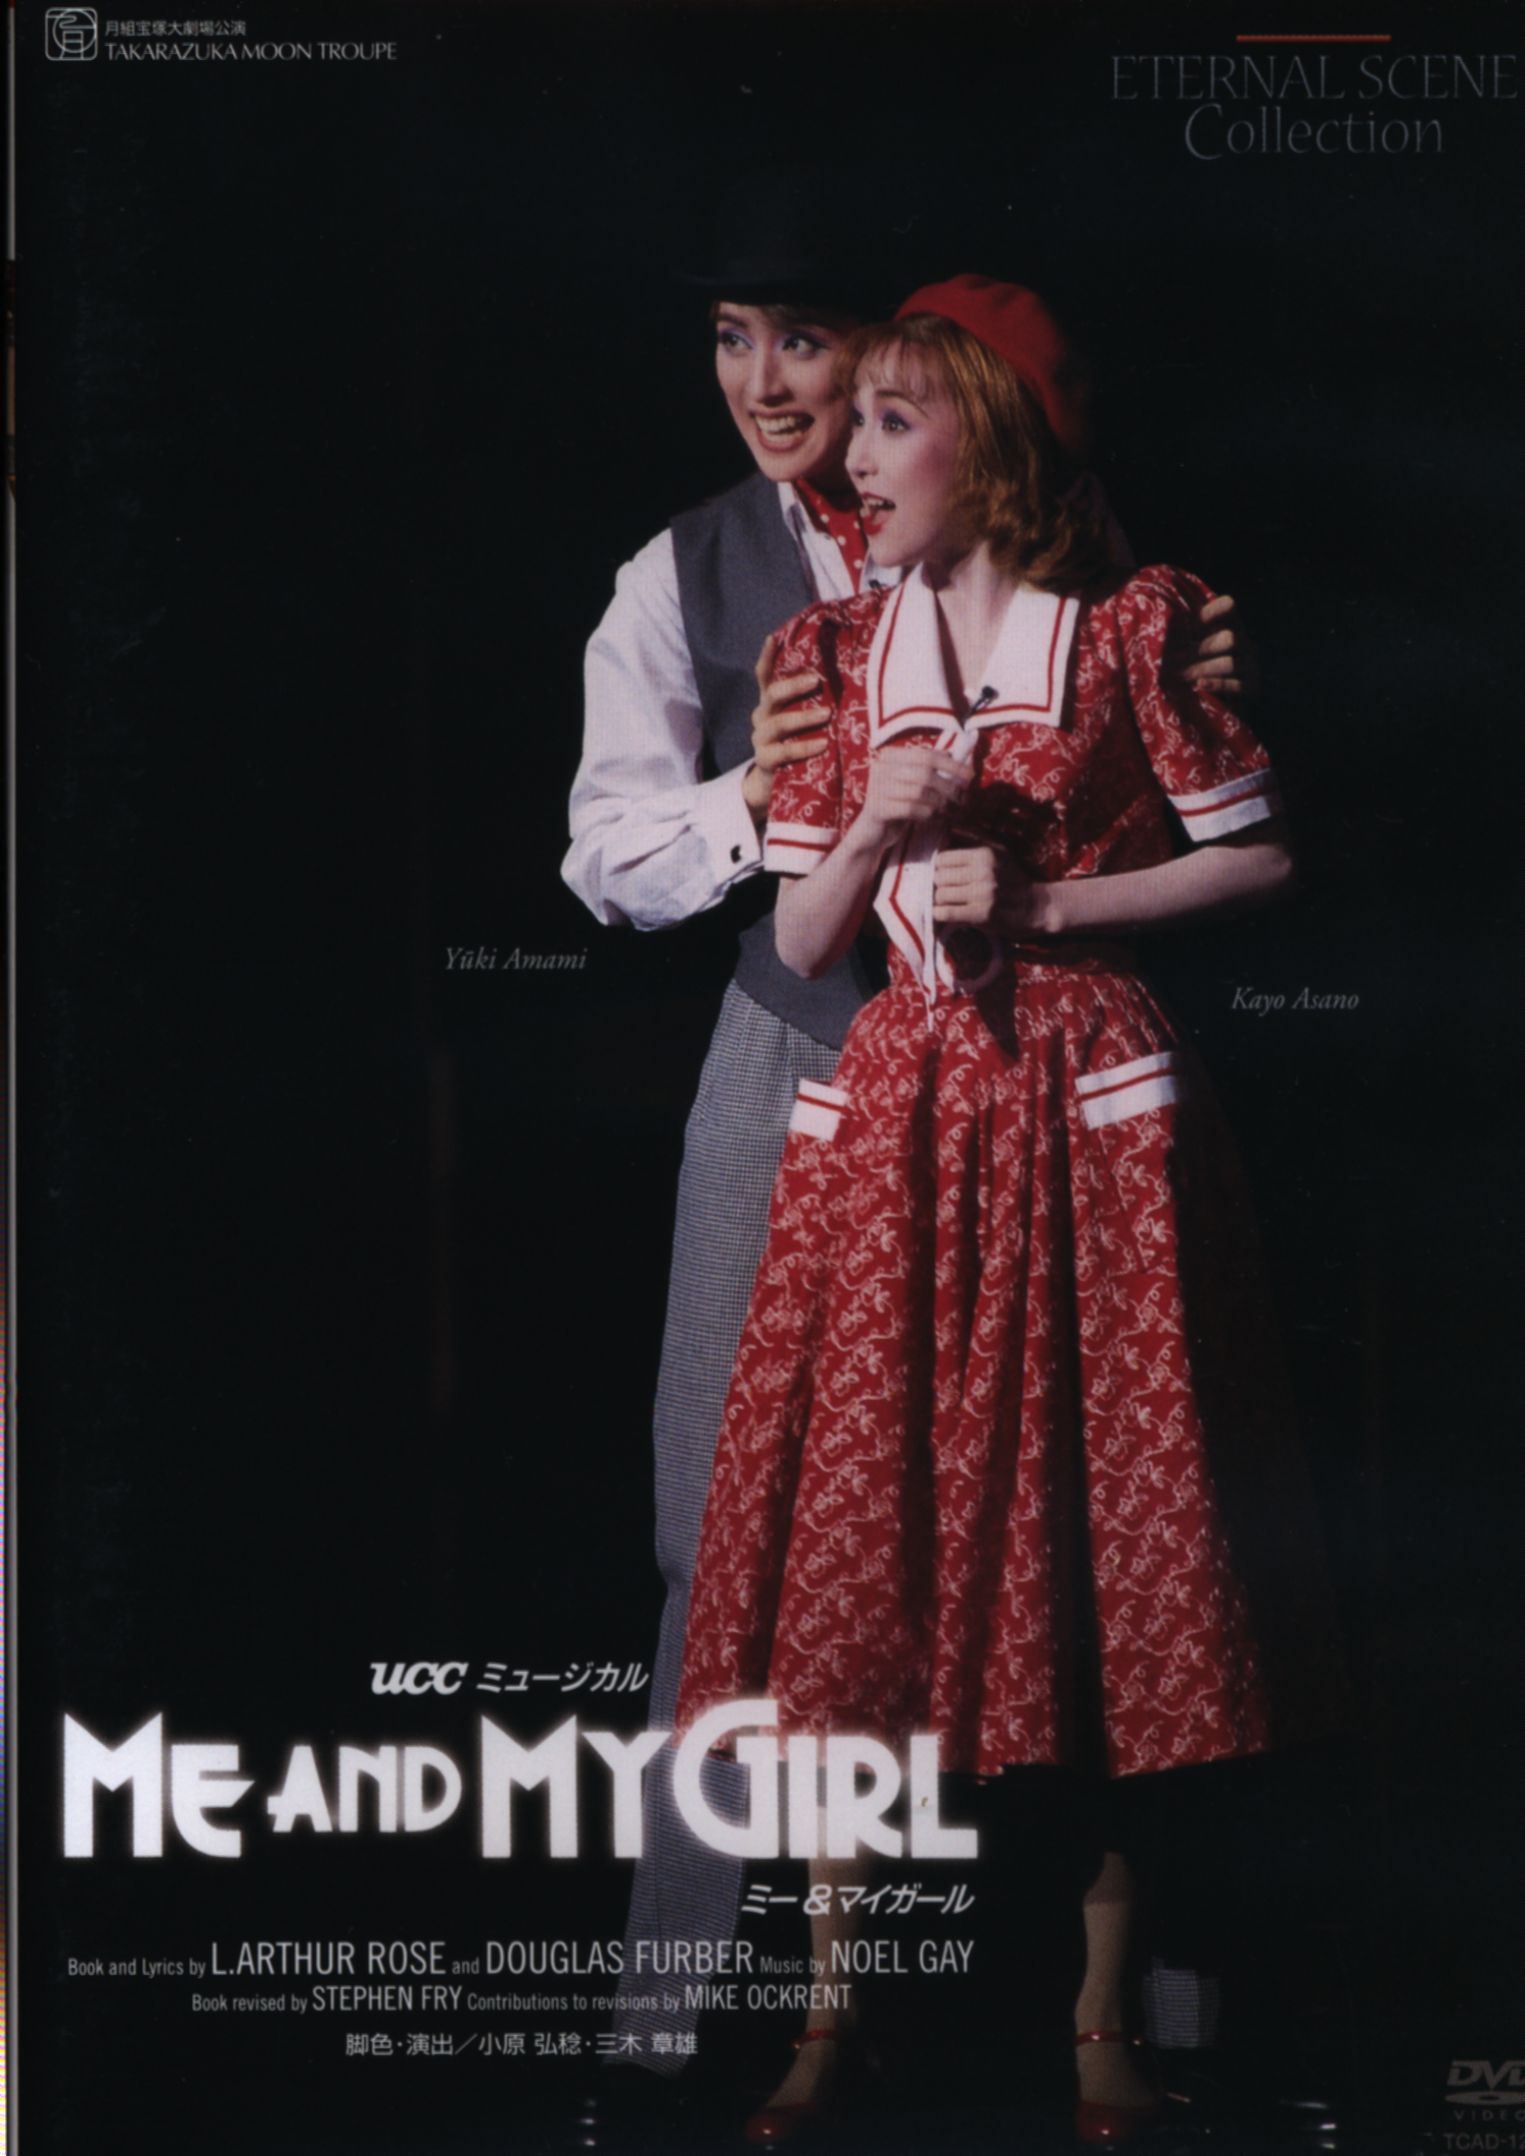 ME AND MY GIRL 天海祐希 DVD www.krzysztofbialy.com